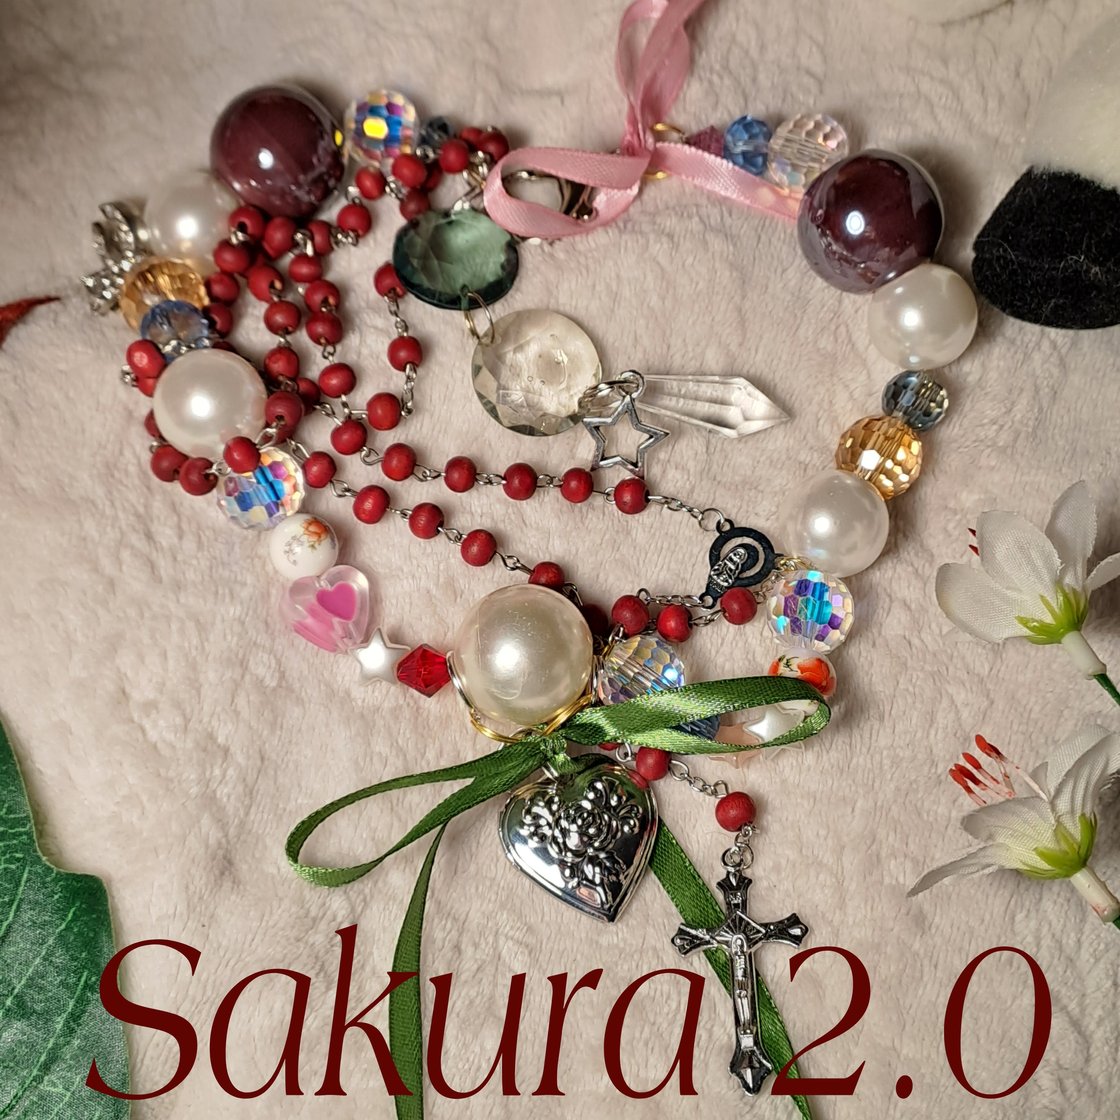 Image of Sakura 2.0